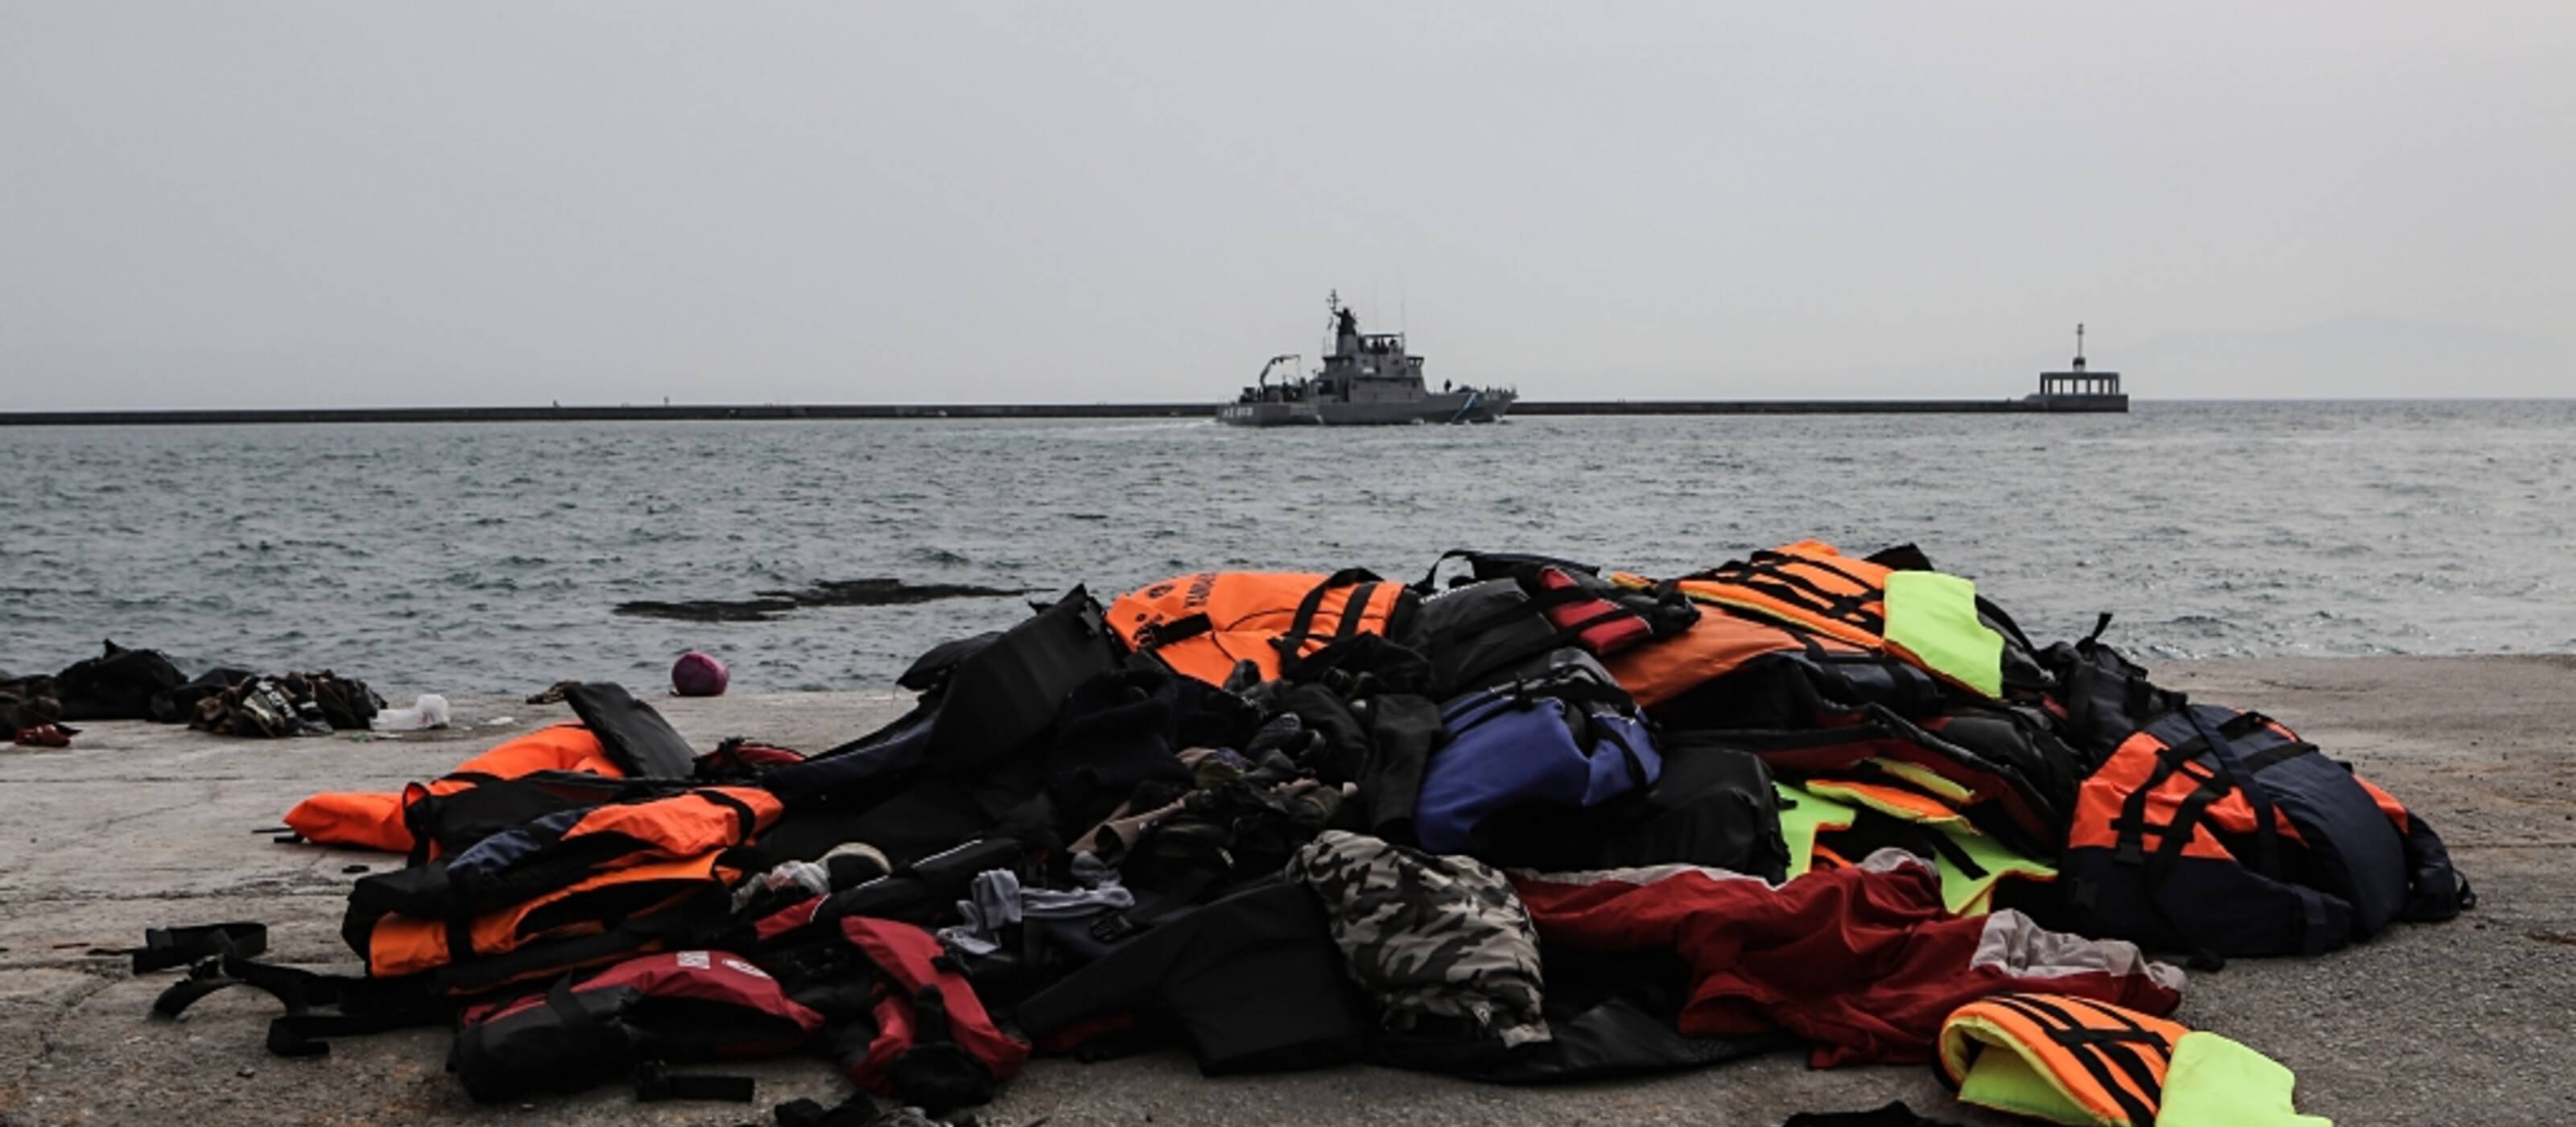 Immagine simbolo di giubbotti di salvataggio usati sulle coste della Grecia.